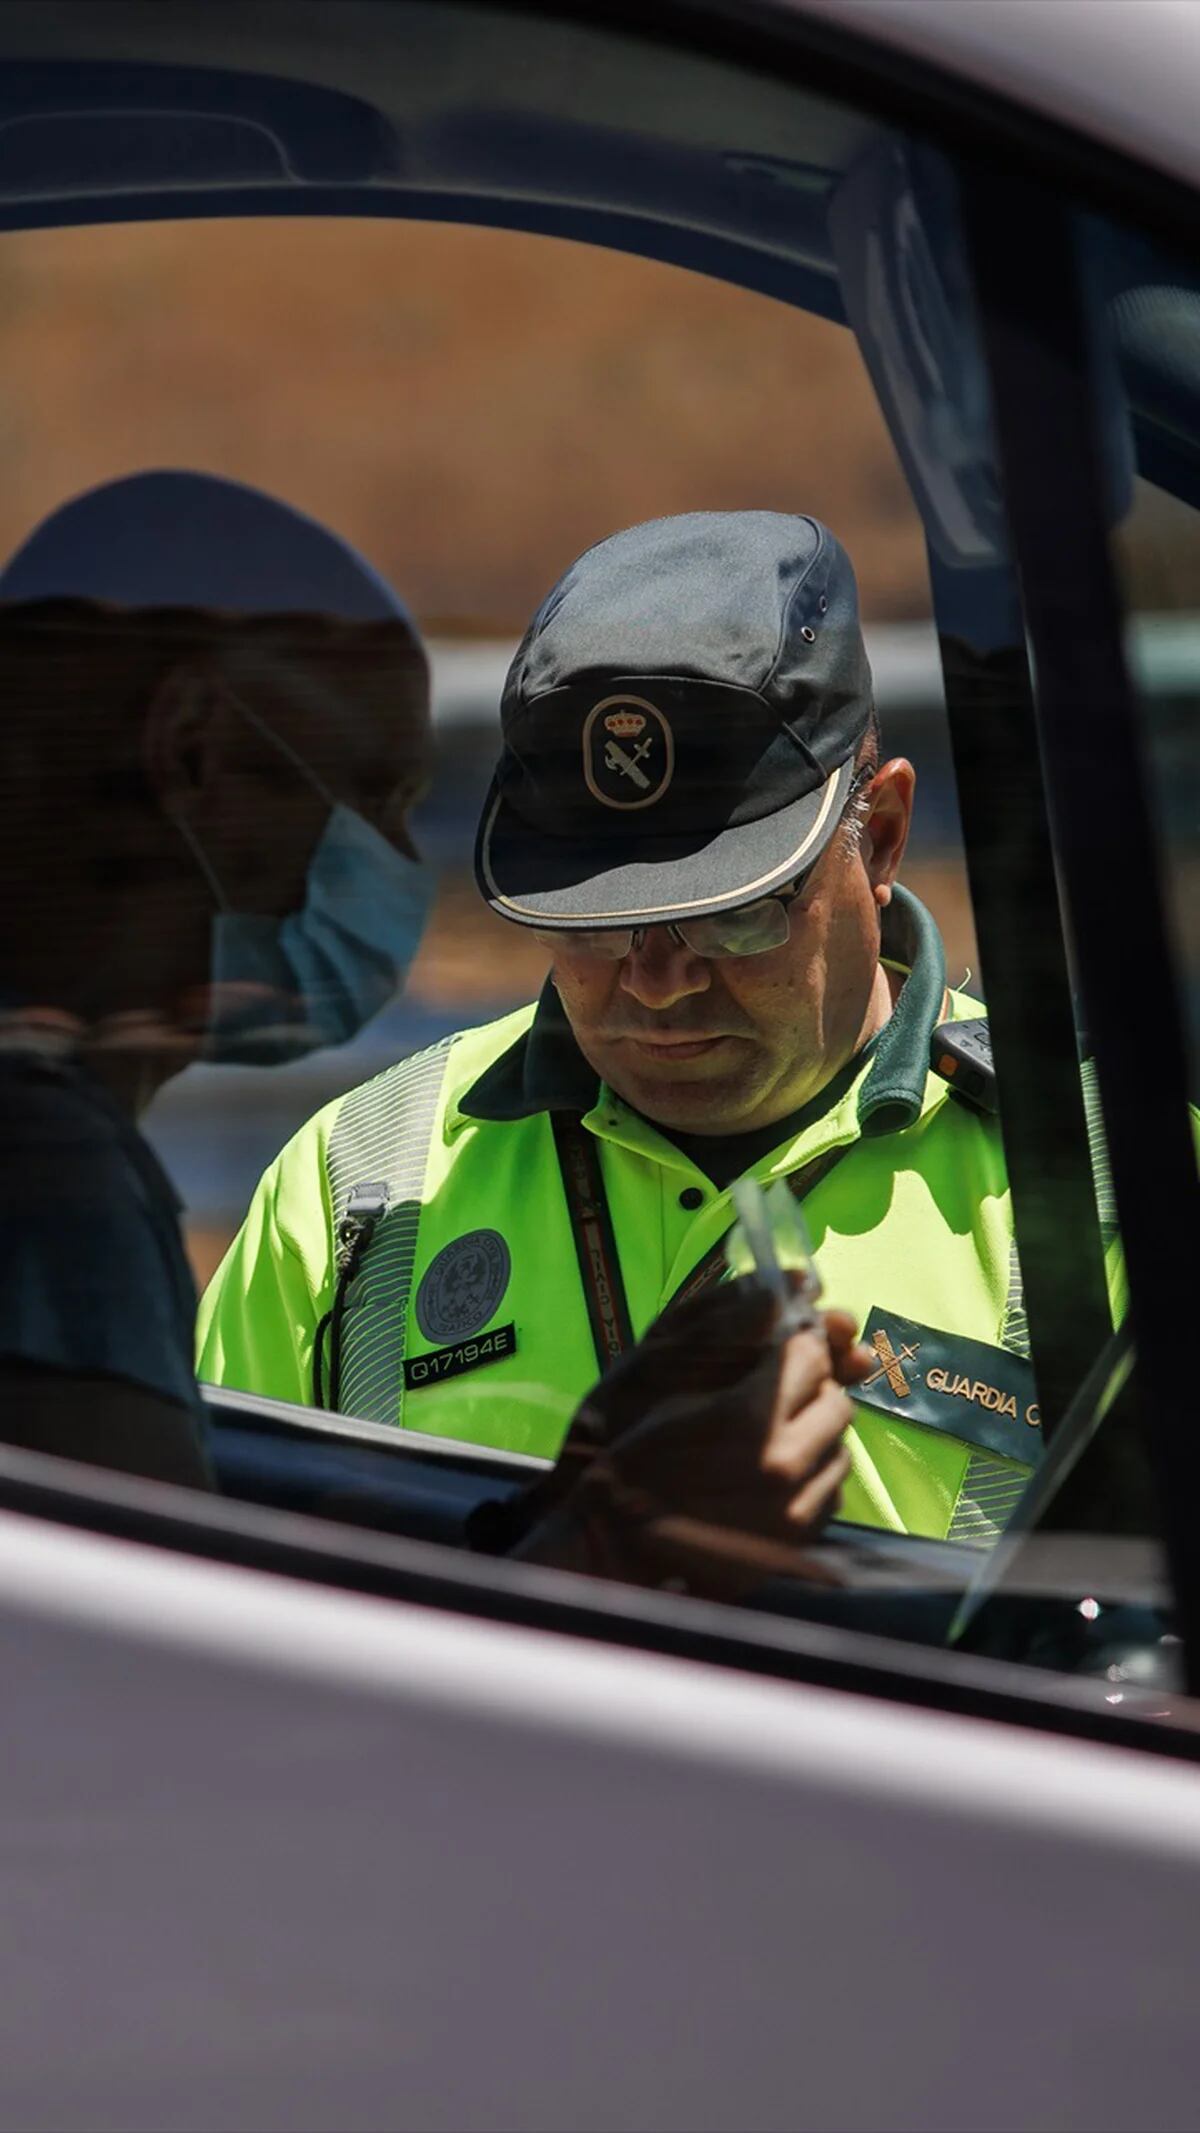 La Guardia Civil recuerda los tres motivos para tocar el claxon del coche y  la multa